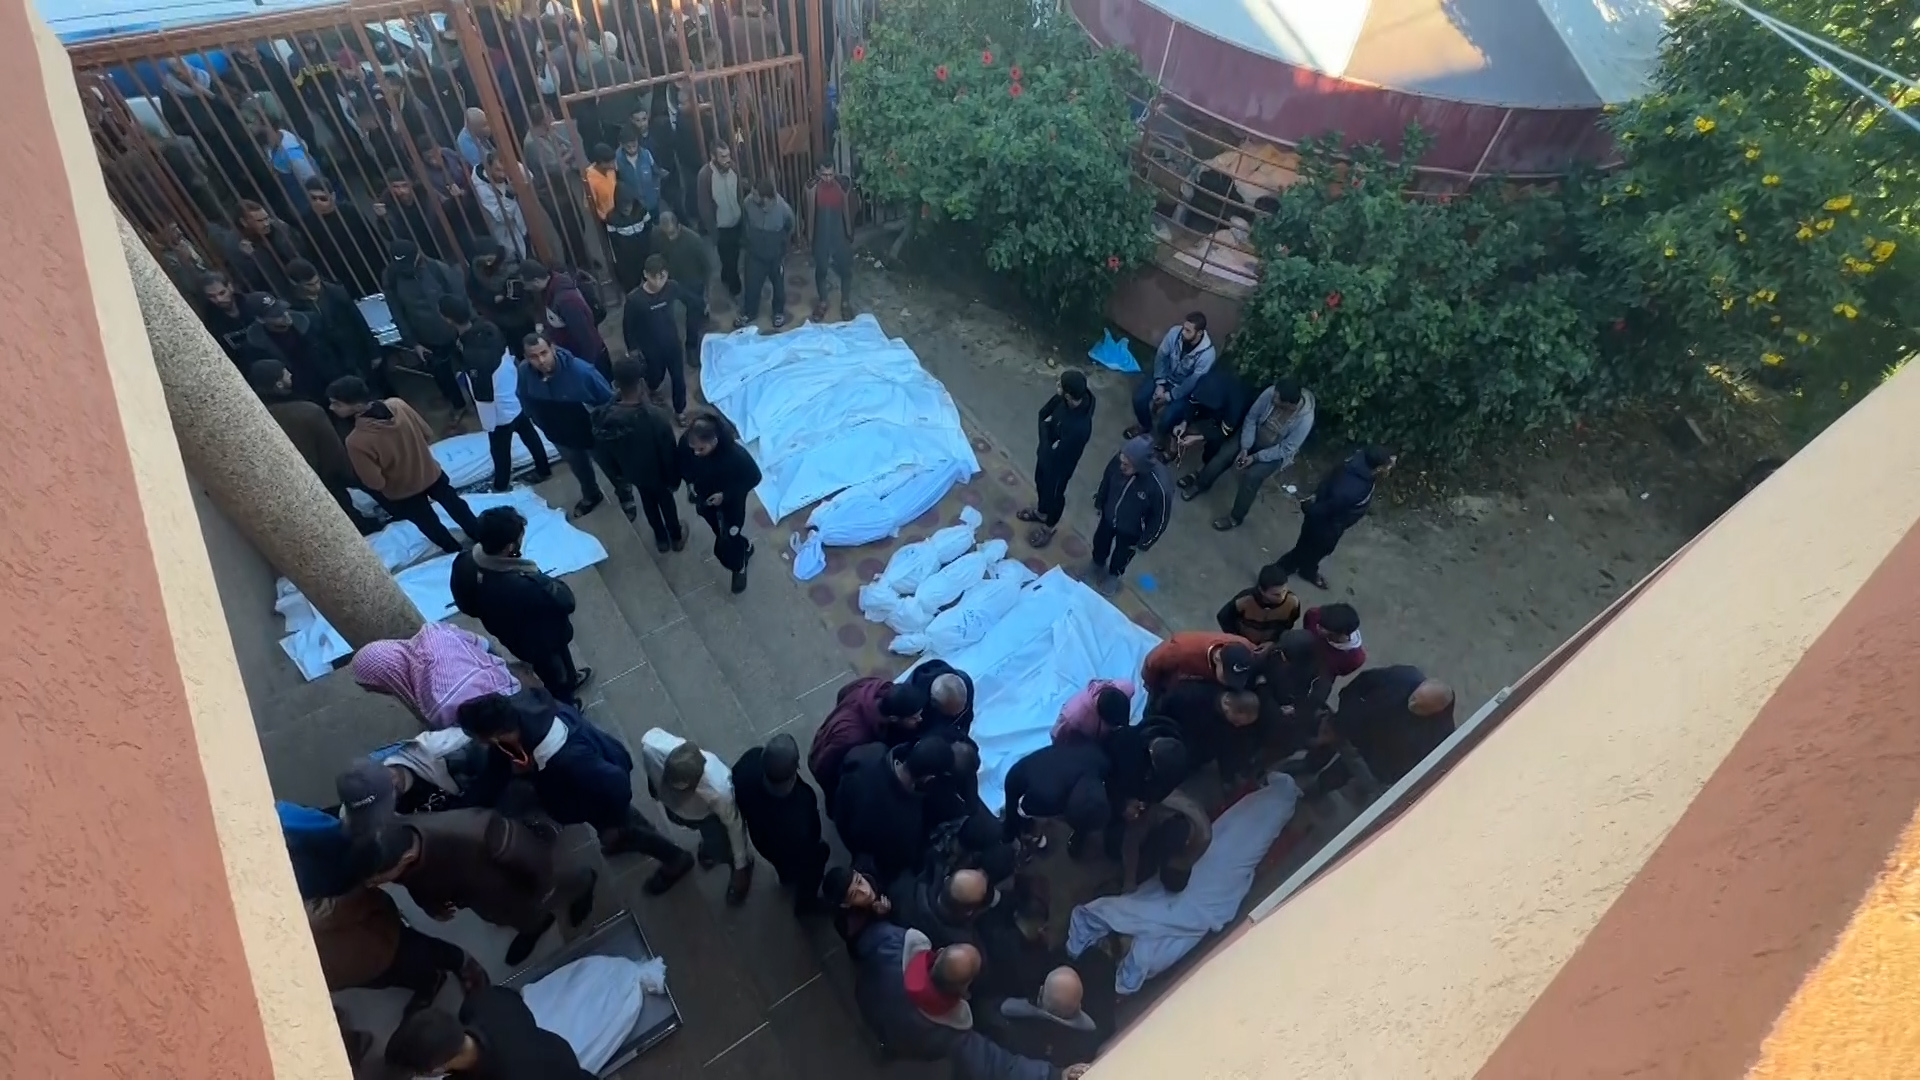 حزن وذهول في وداع 12 شهيدا جراء قصف إسرائيلي لمدرسة في خان يونس | البرامج – البوكس نيوز